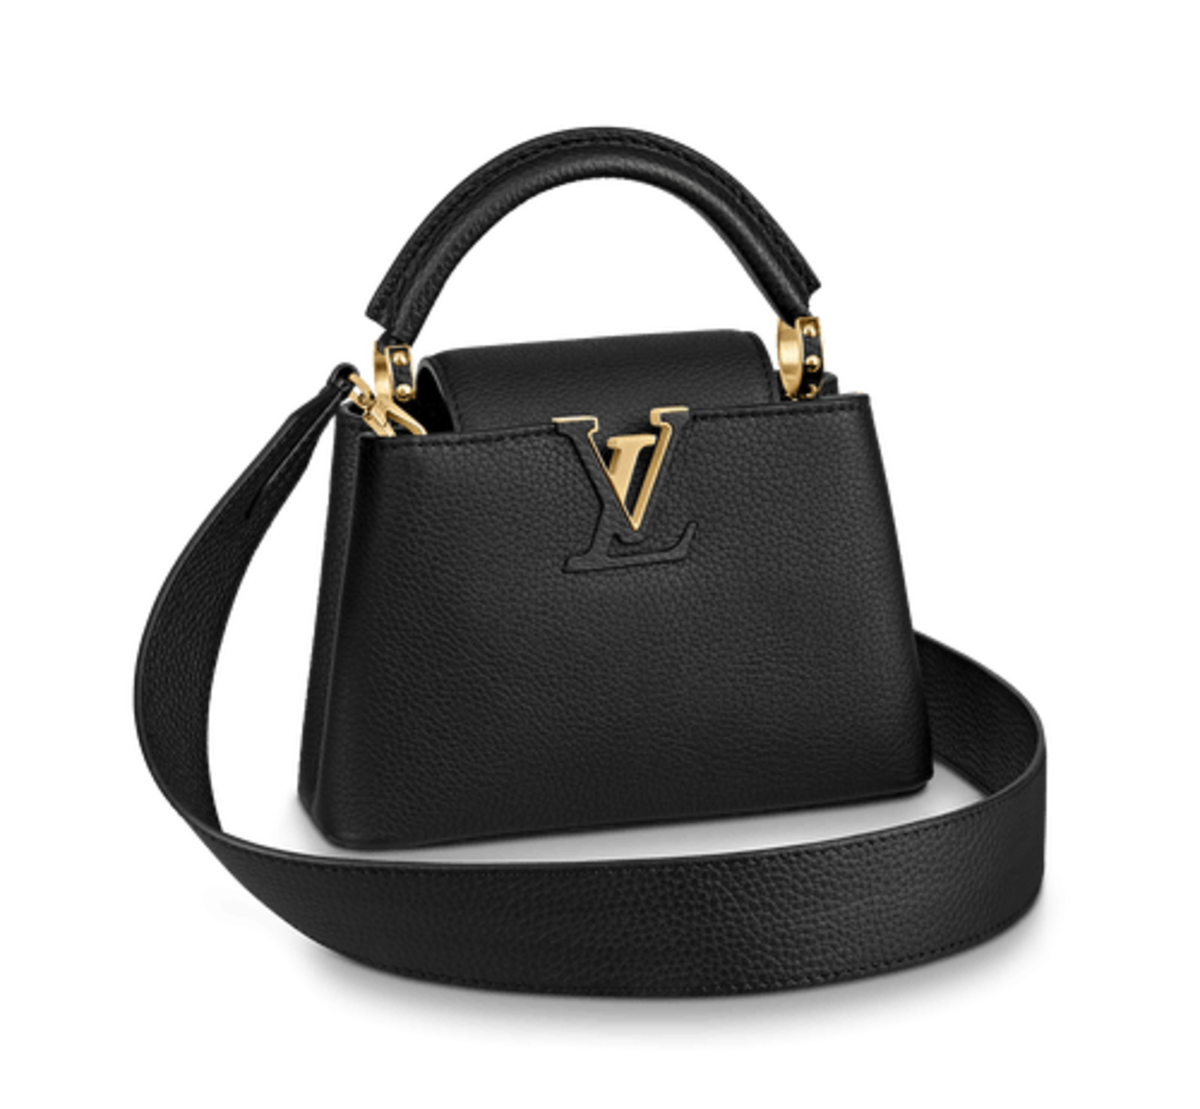 I'd rather buy Louis Vuitton on ! 😅 NEW Epi speedy, alma